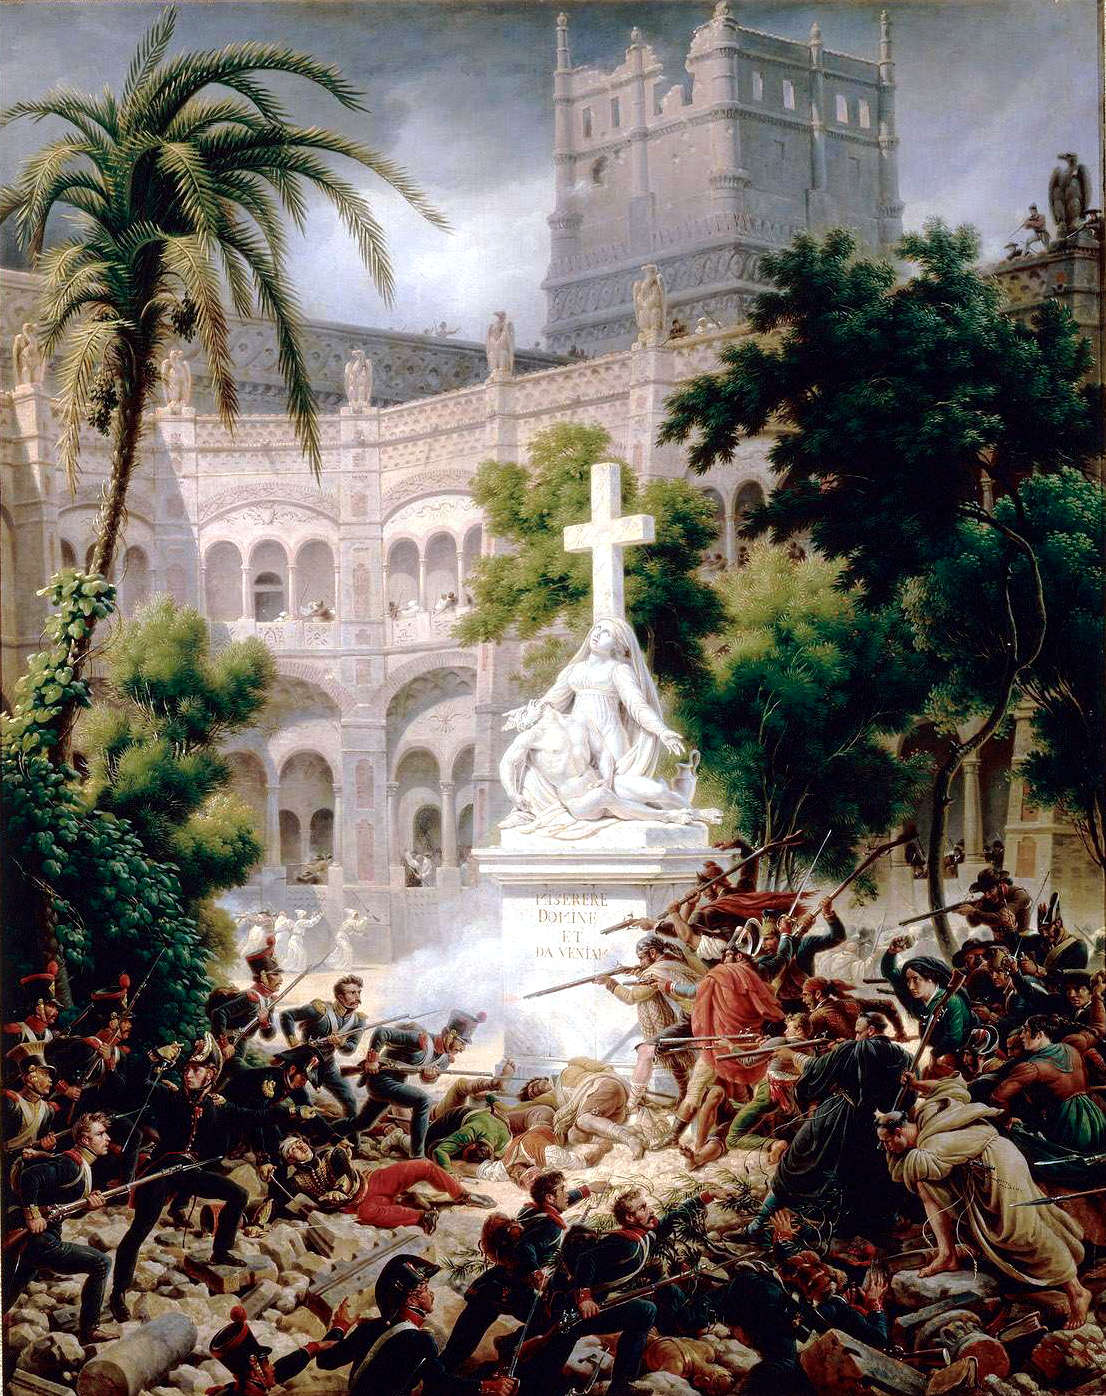 14 de agosto de 1808 Durante la Guerra del Francés, los franceses levantan el primer sitio en Zaragoza